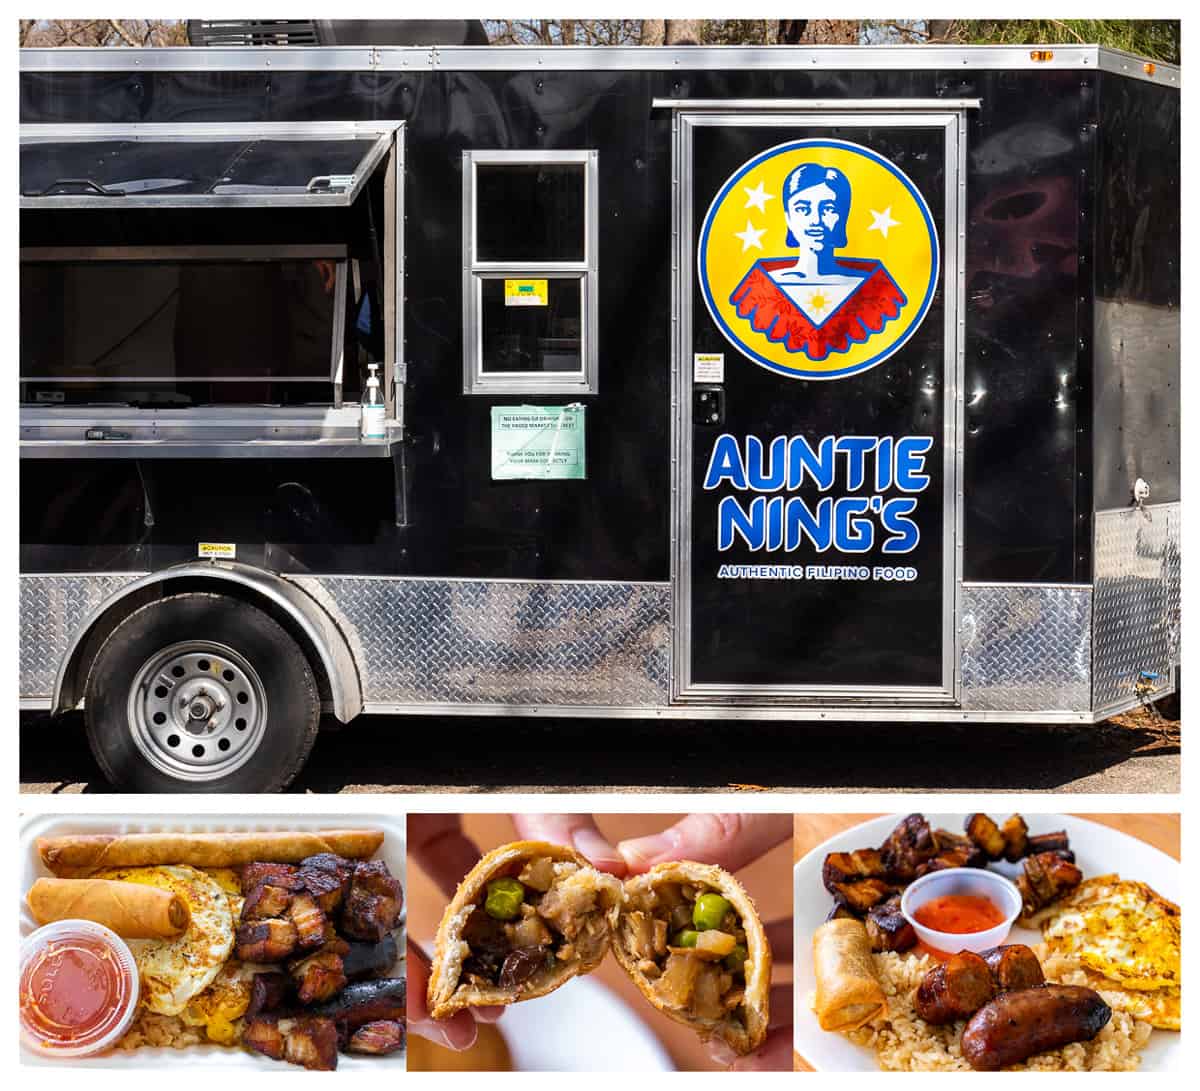 Richmond, VA food trucks: Auntie Ning's food truck and menu items